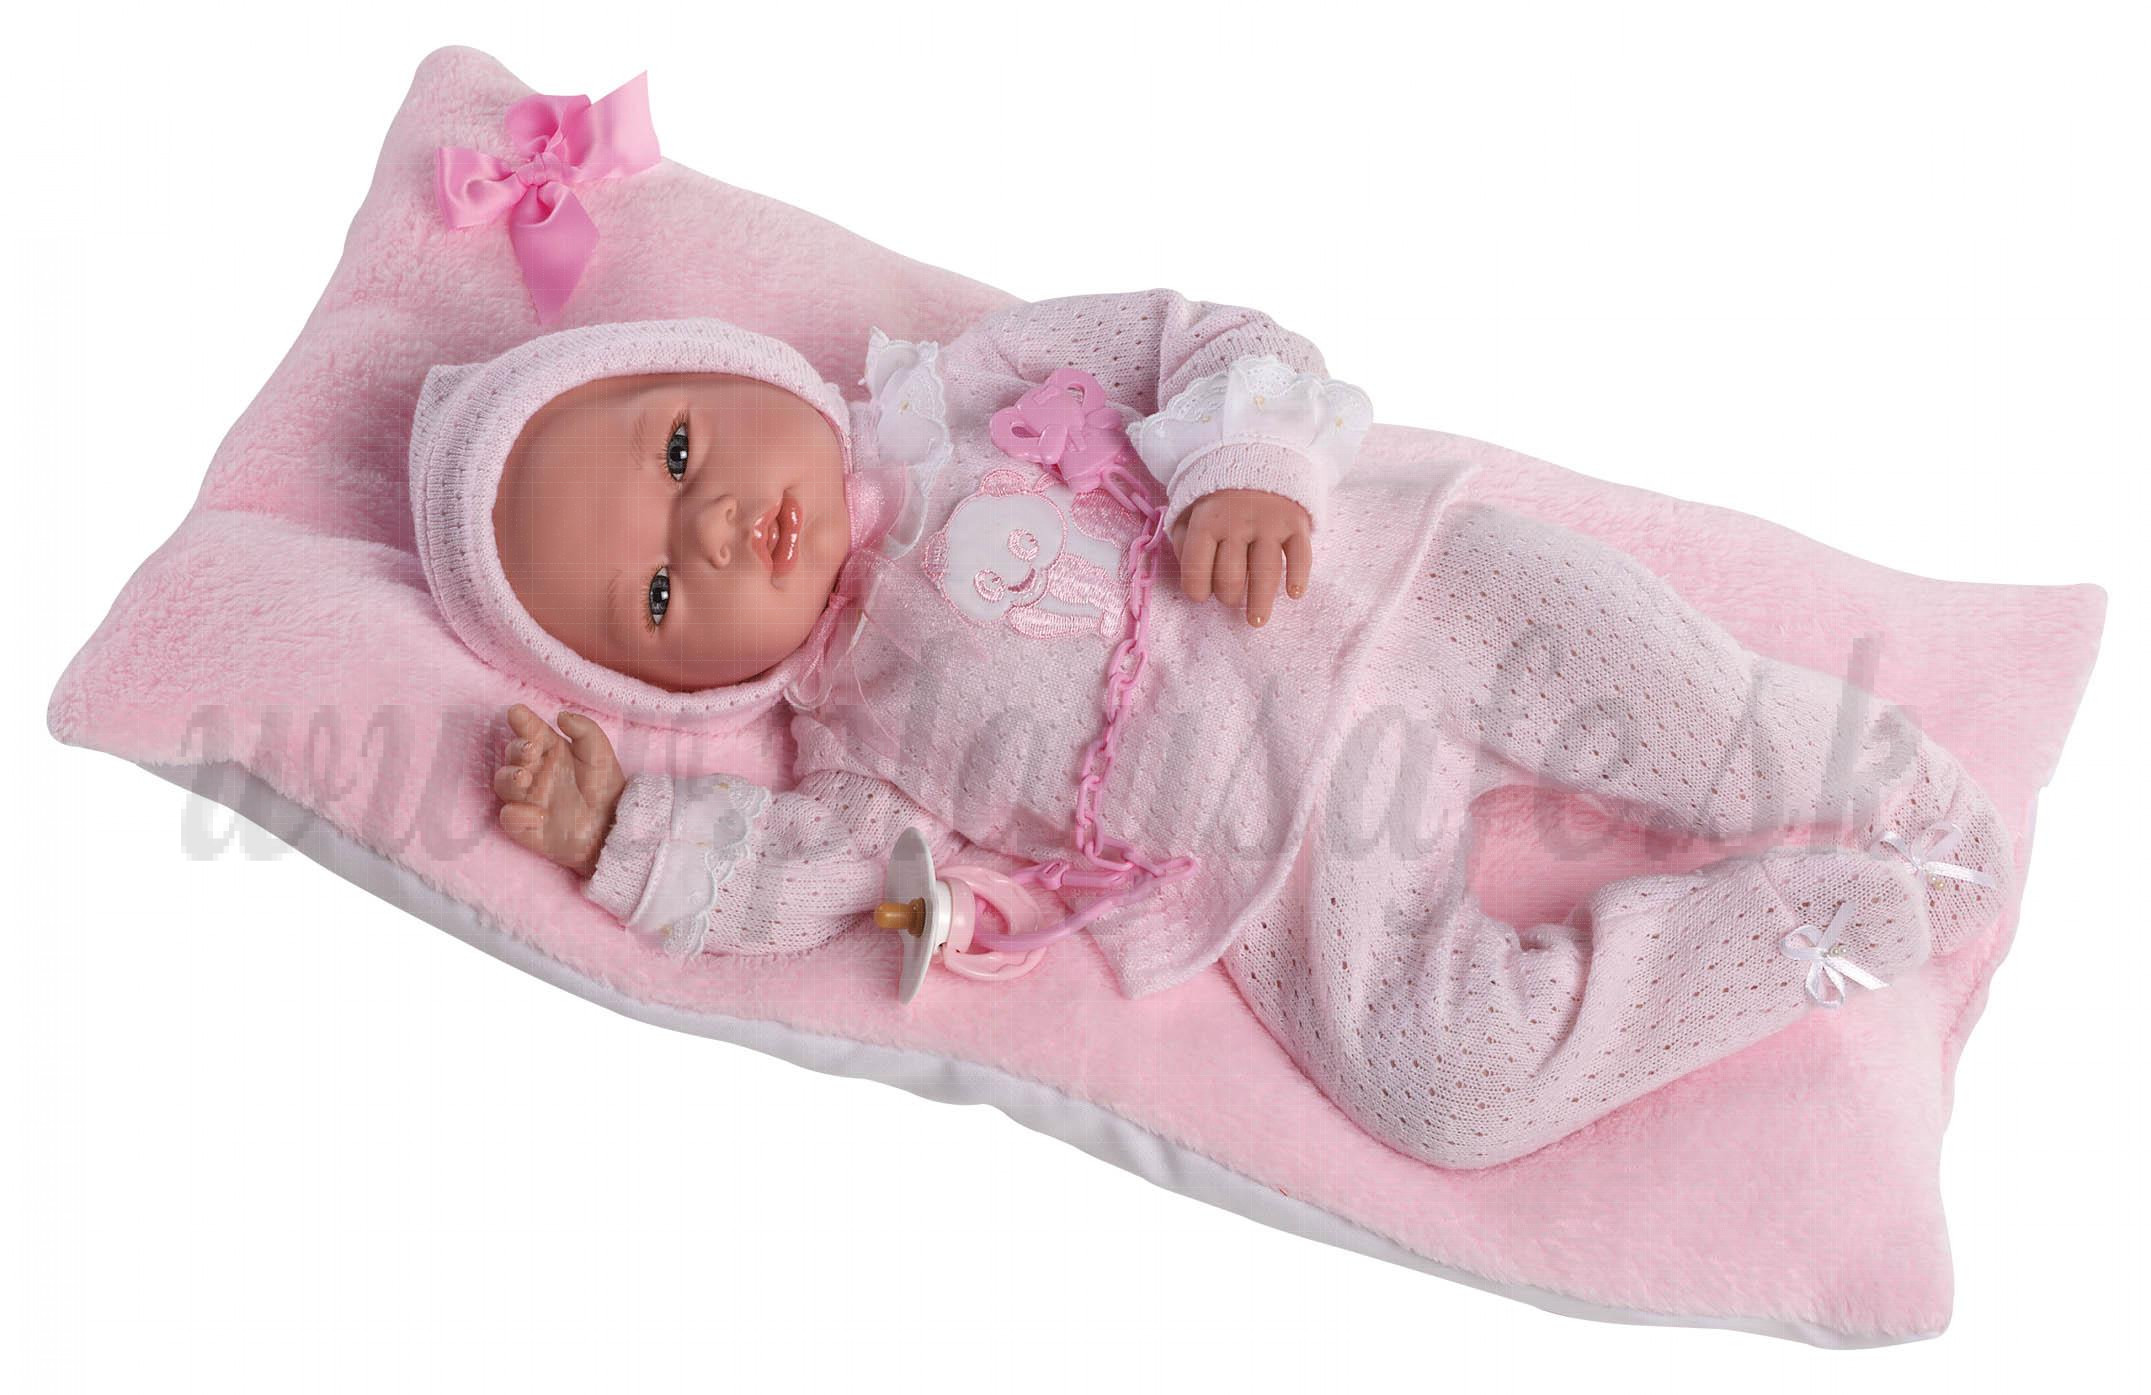 Guca Reborn Baby Doll Andrea, 46cm